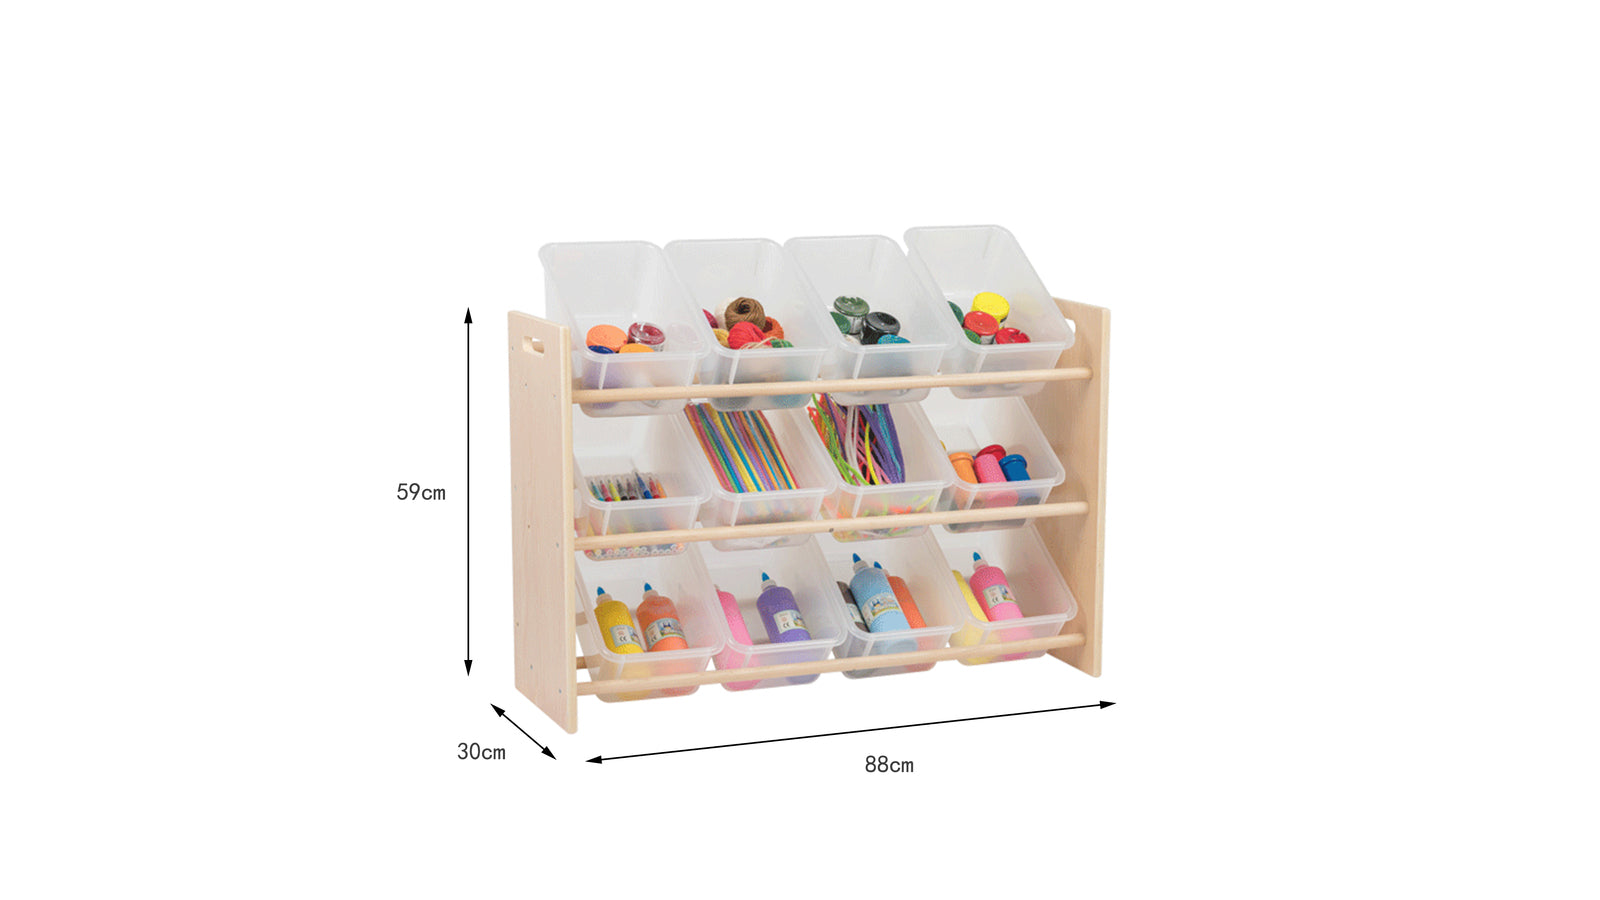 Jooyes Kids 3 Tier Toy Storage Rack Organiser Display Shelf With Bins